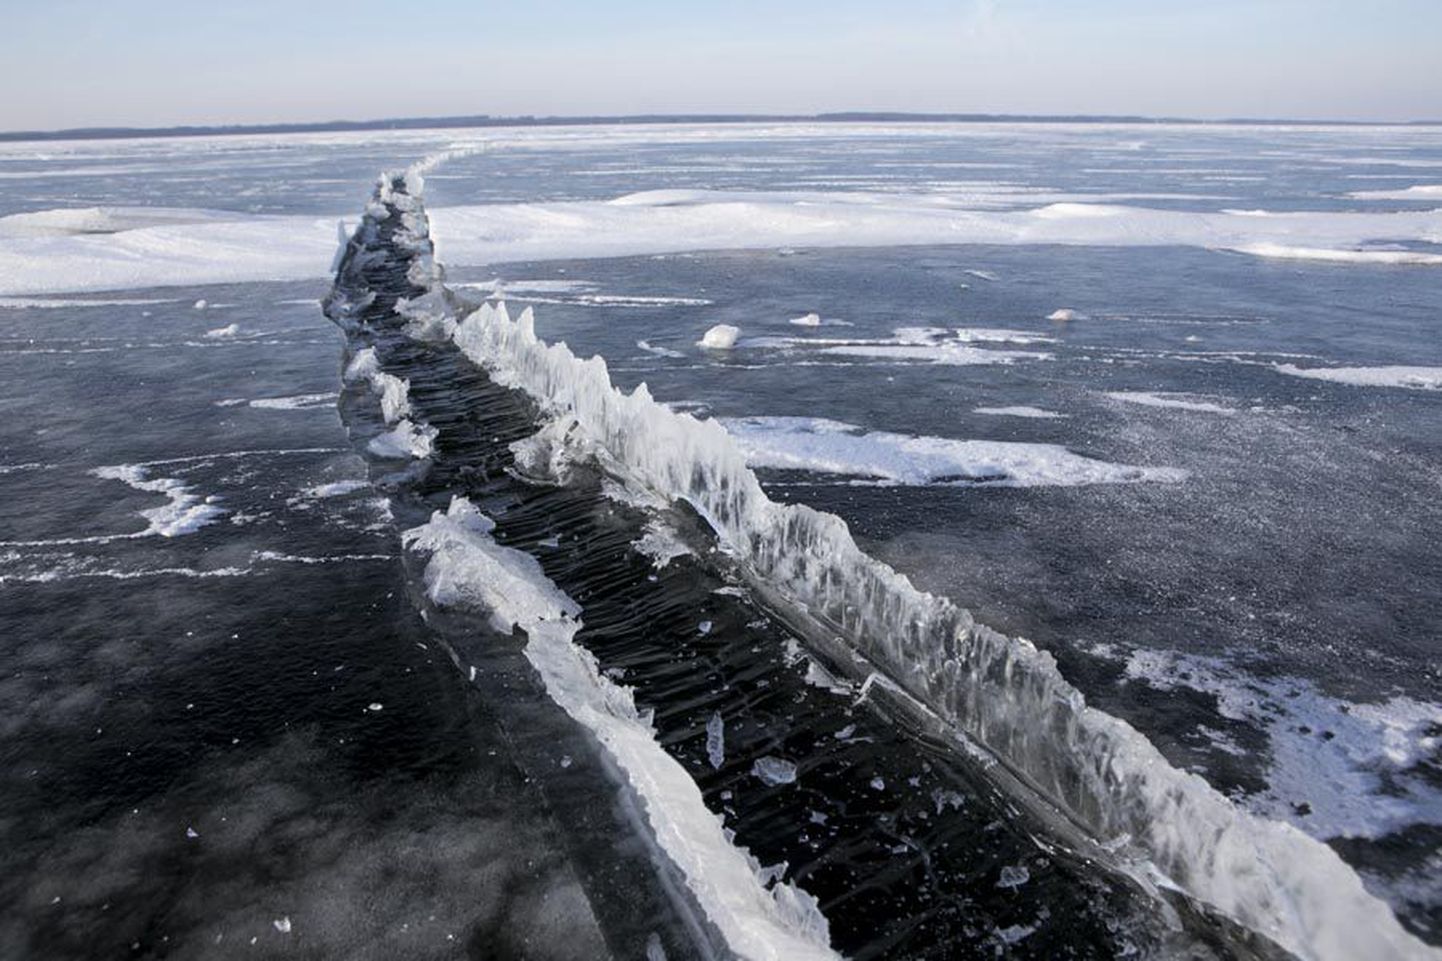 Võrtsjärve jää keskmine paksus on 12 sentimeetrit, aga suurt ohtu kujutavad endast jääs olevad lõhed, mis Tartu pool võivad olla poolsada meetrit laiad.